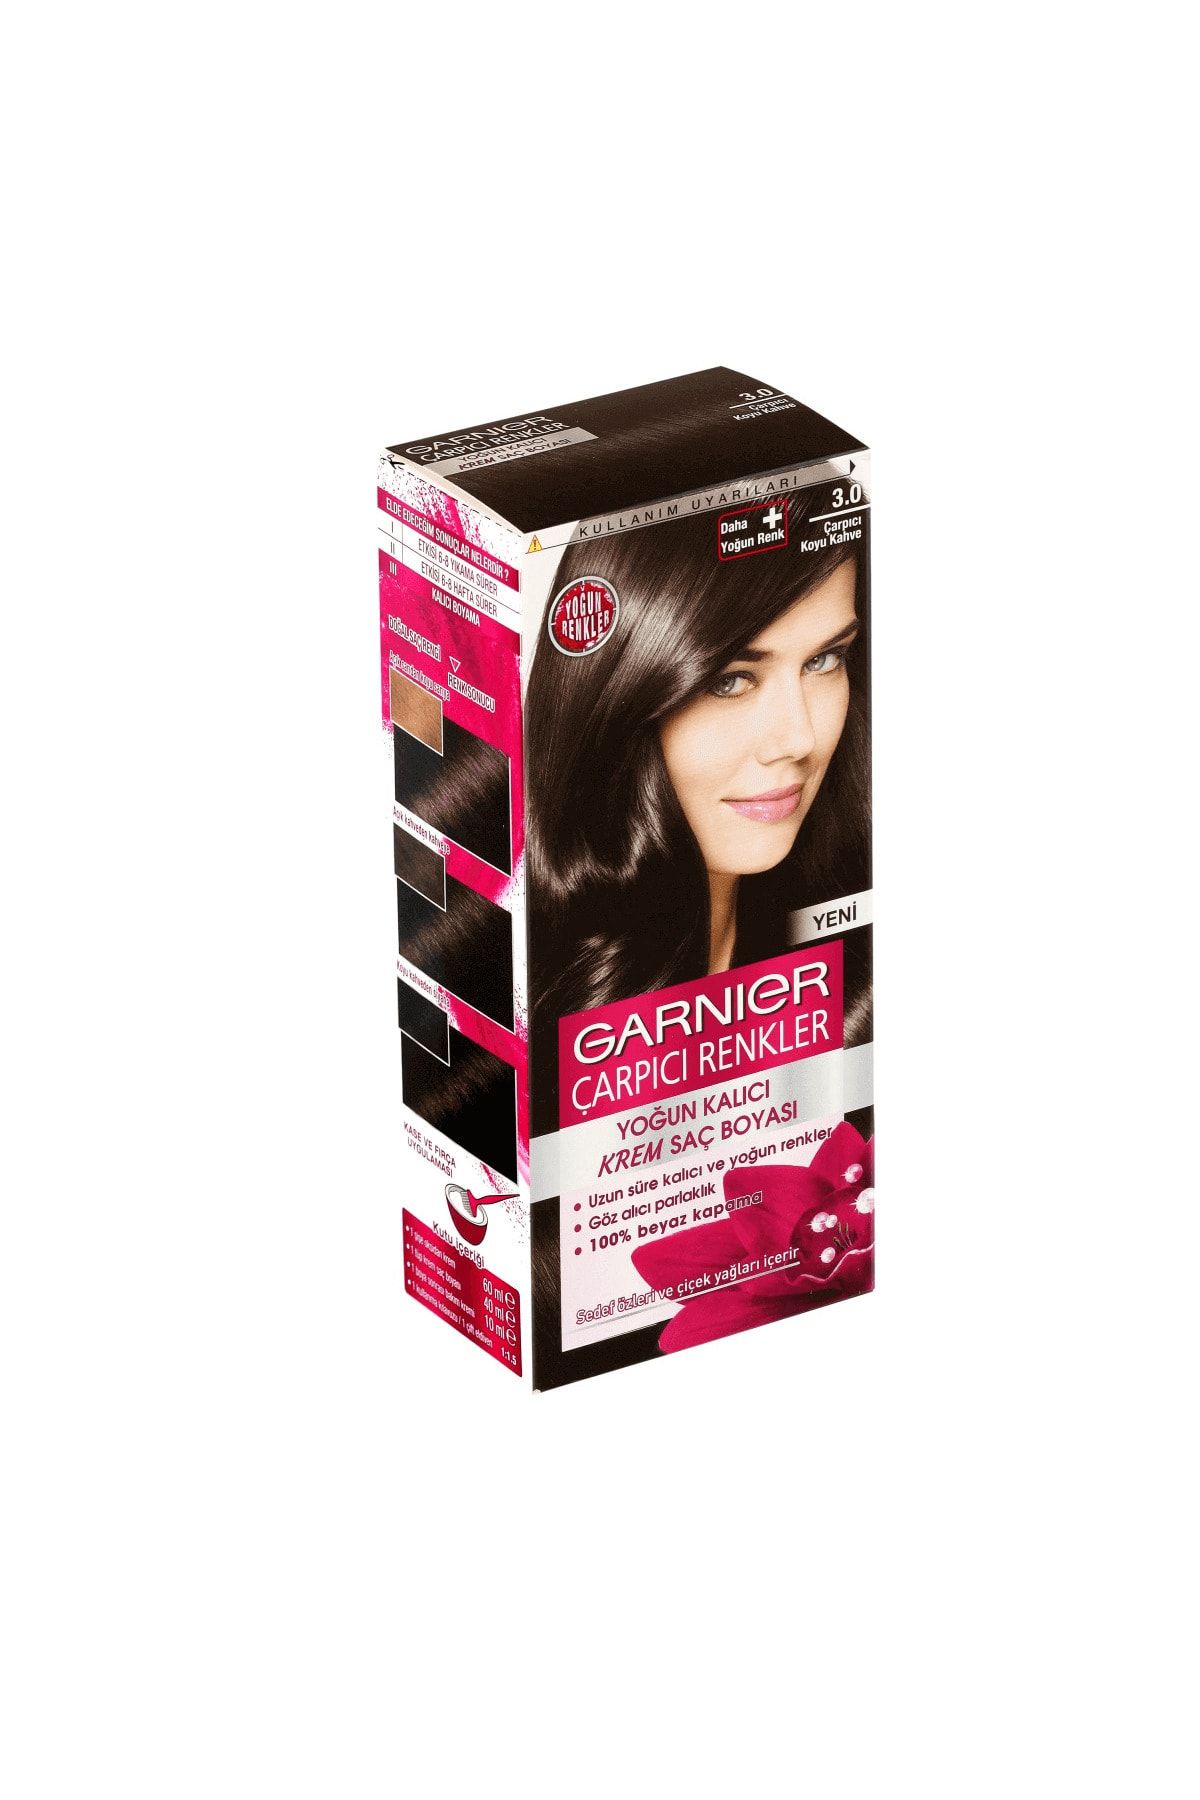 Garnier Marka: Çarpıcı Renkler Saç Boyası Çarpıcı Kahve 3 Kategori: Saç Boyası